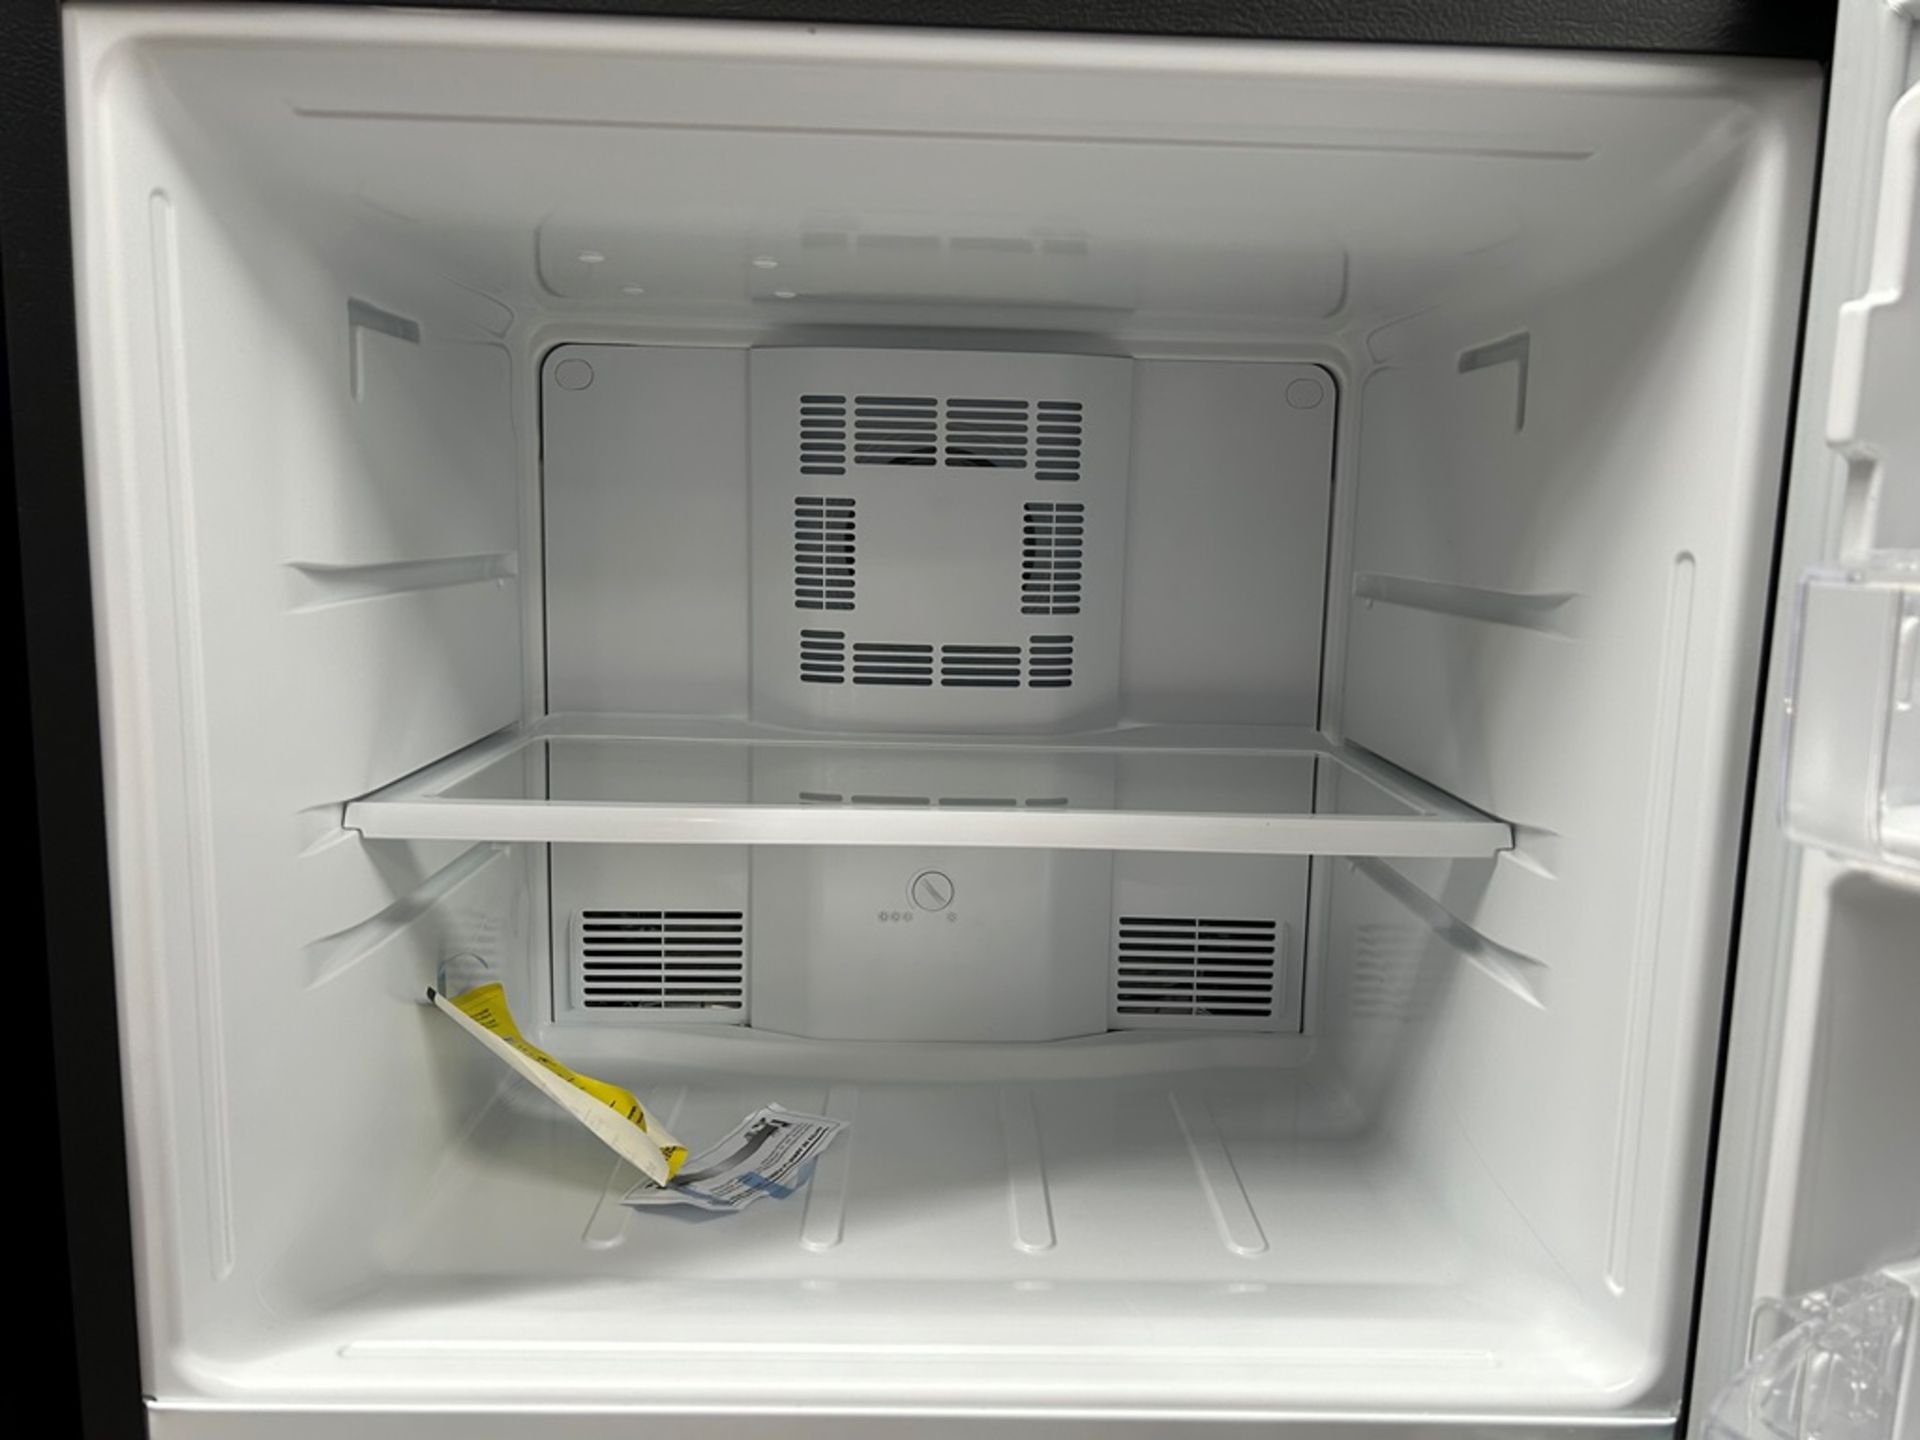 Lote de 2 refrigeradores contiene: 1 refrigerador Marca MABE, Modelo RME360PVMRM, Serie 01988, Colo - Image 11 of 18